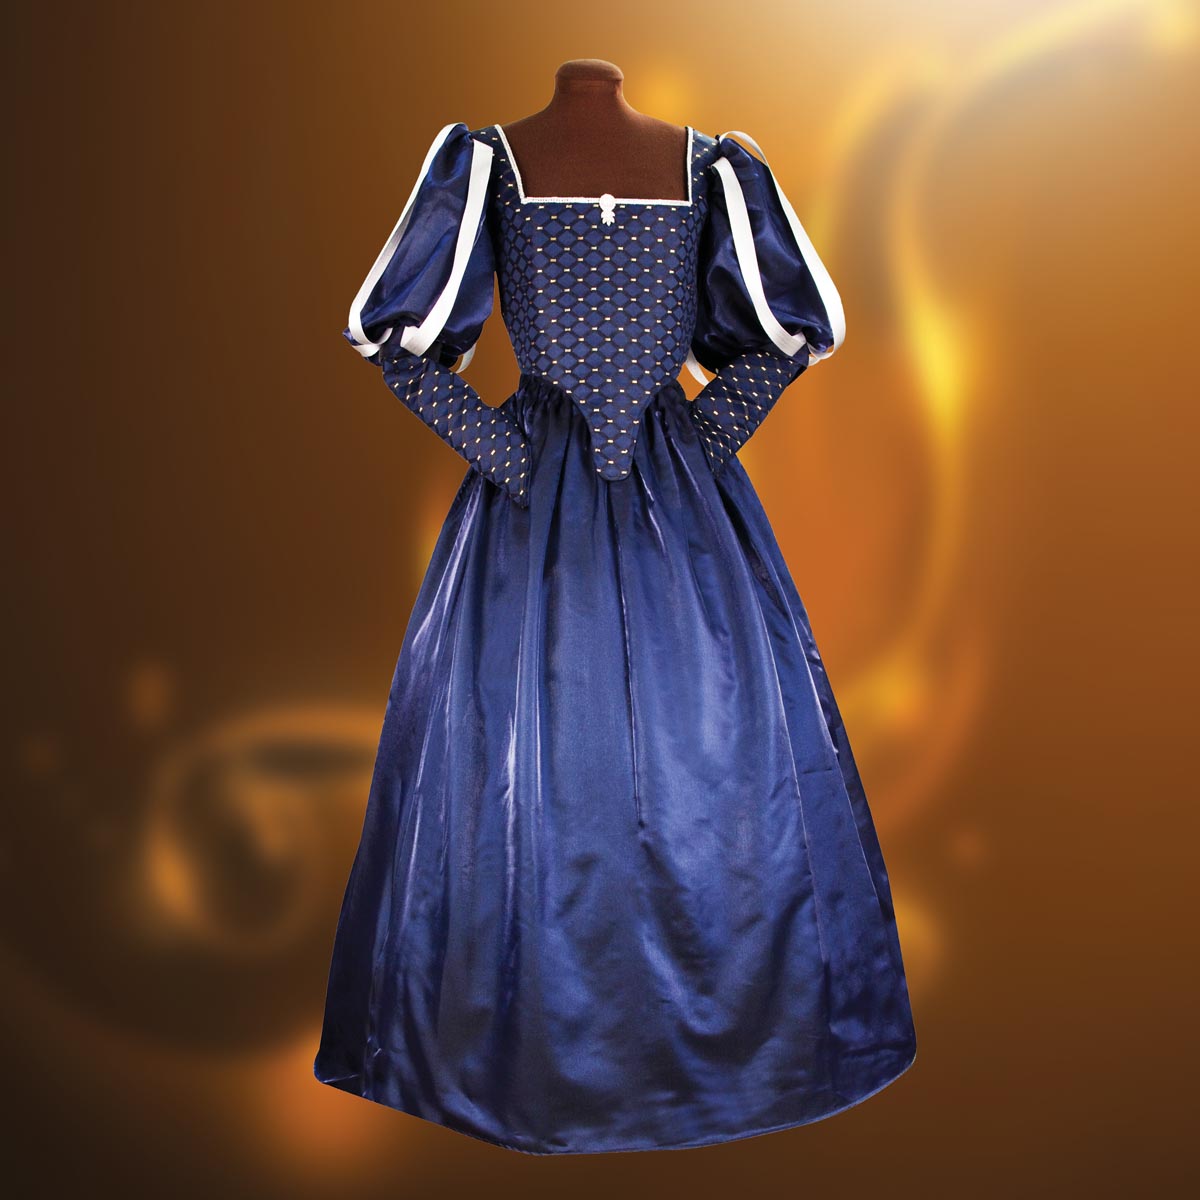 Ladies Renaissance Milady's Gown, Size M